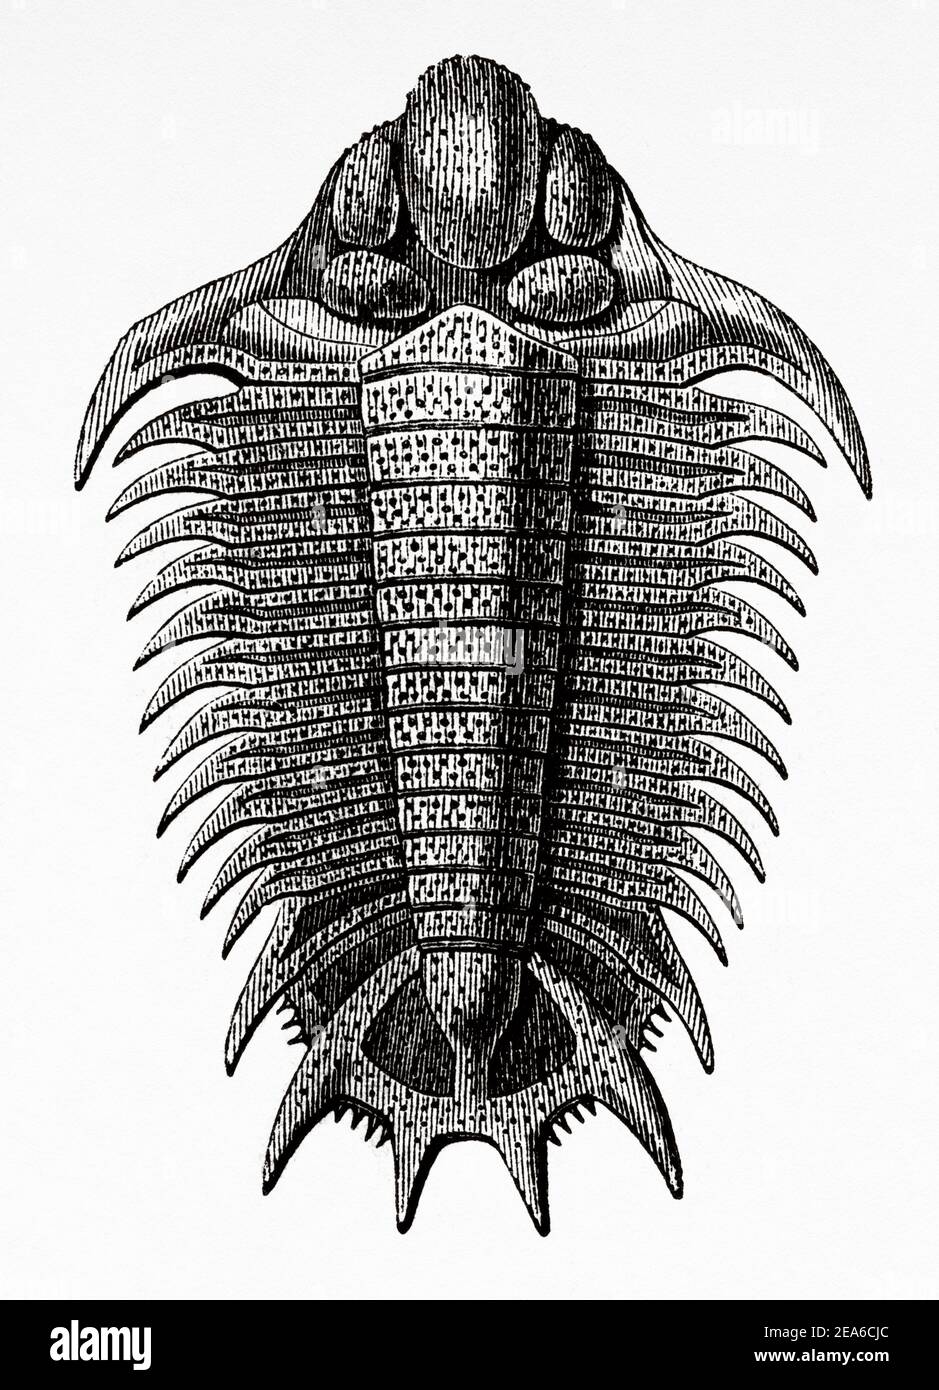 Old Nineteenth century illustration. Trilobite Fossil. Old 19th century engraved illustration from El Mundo Ilustrado 1879 Stock Photo